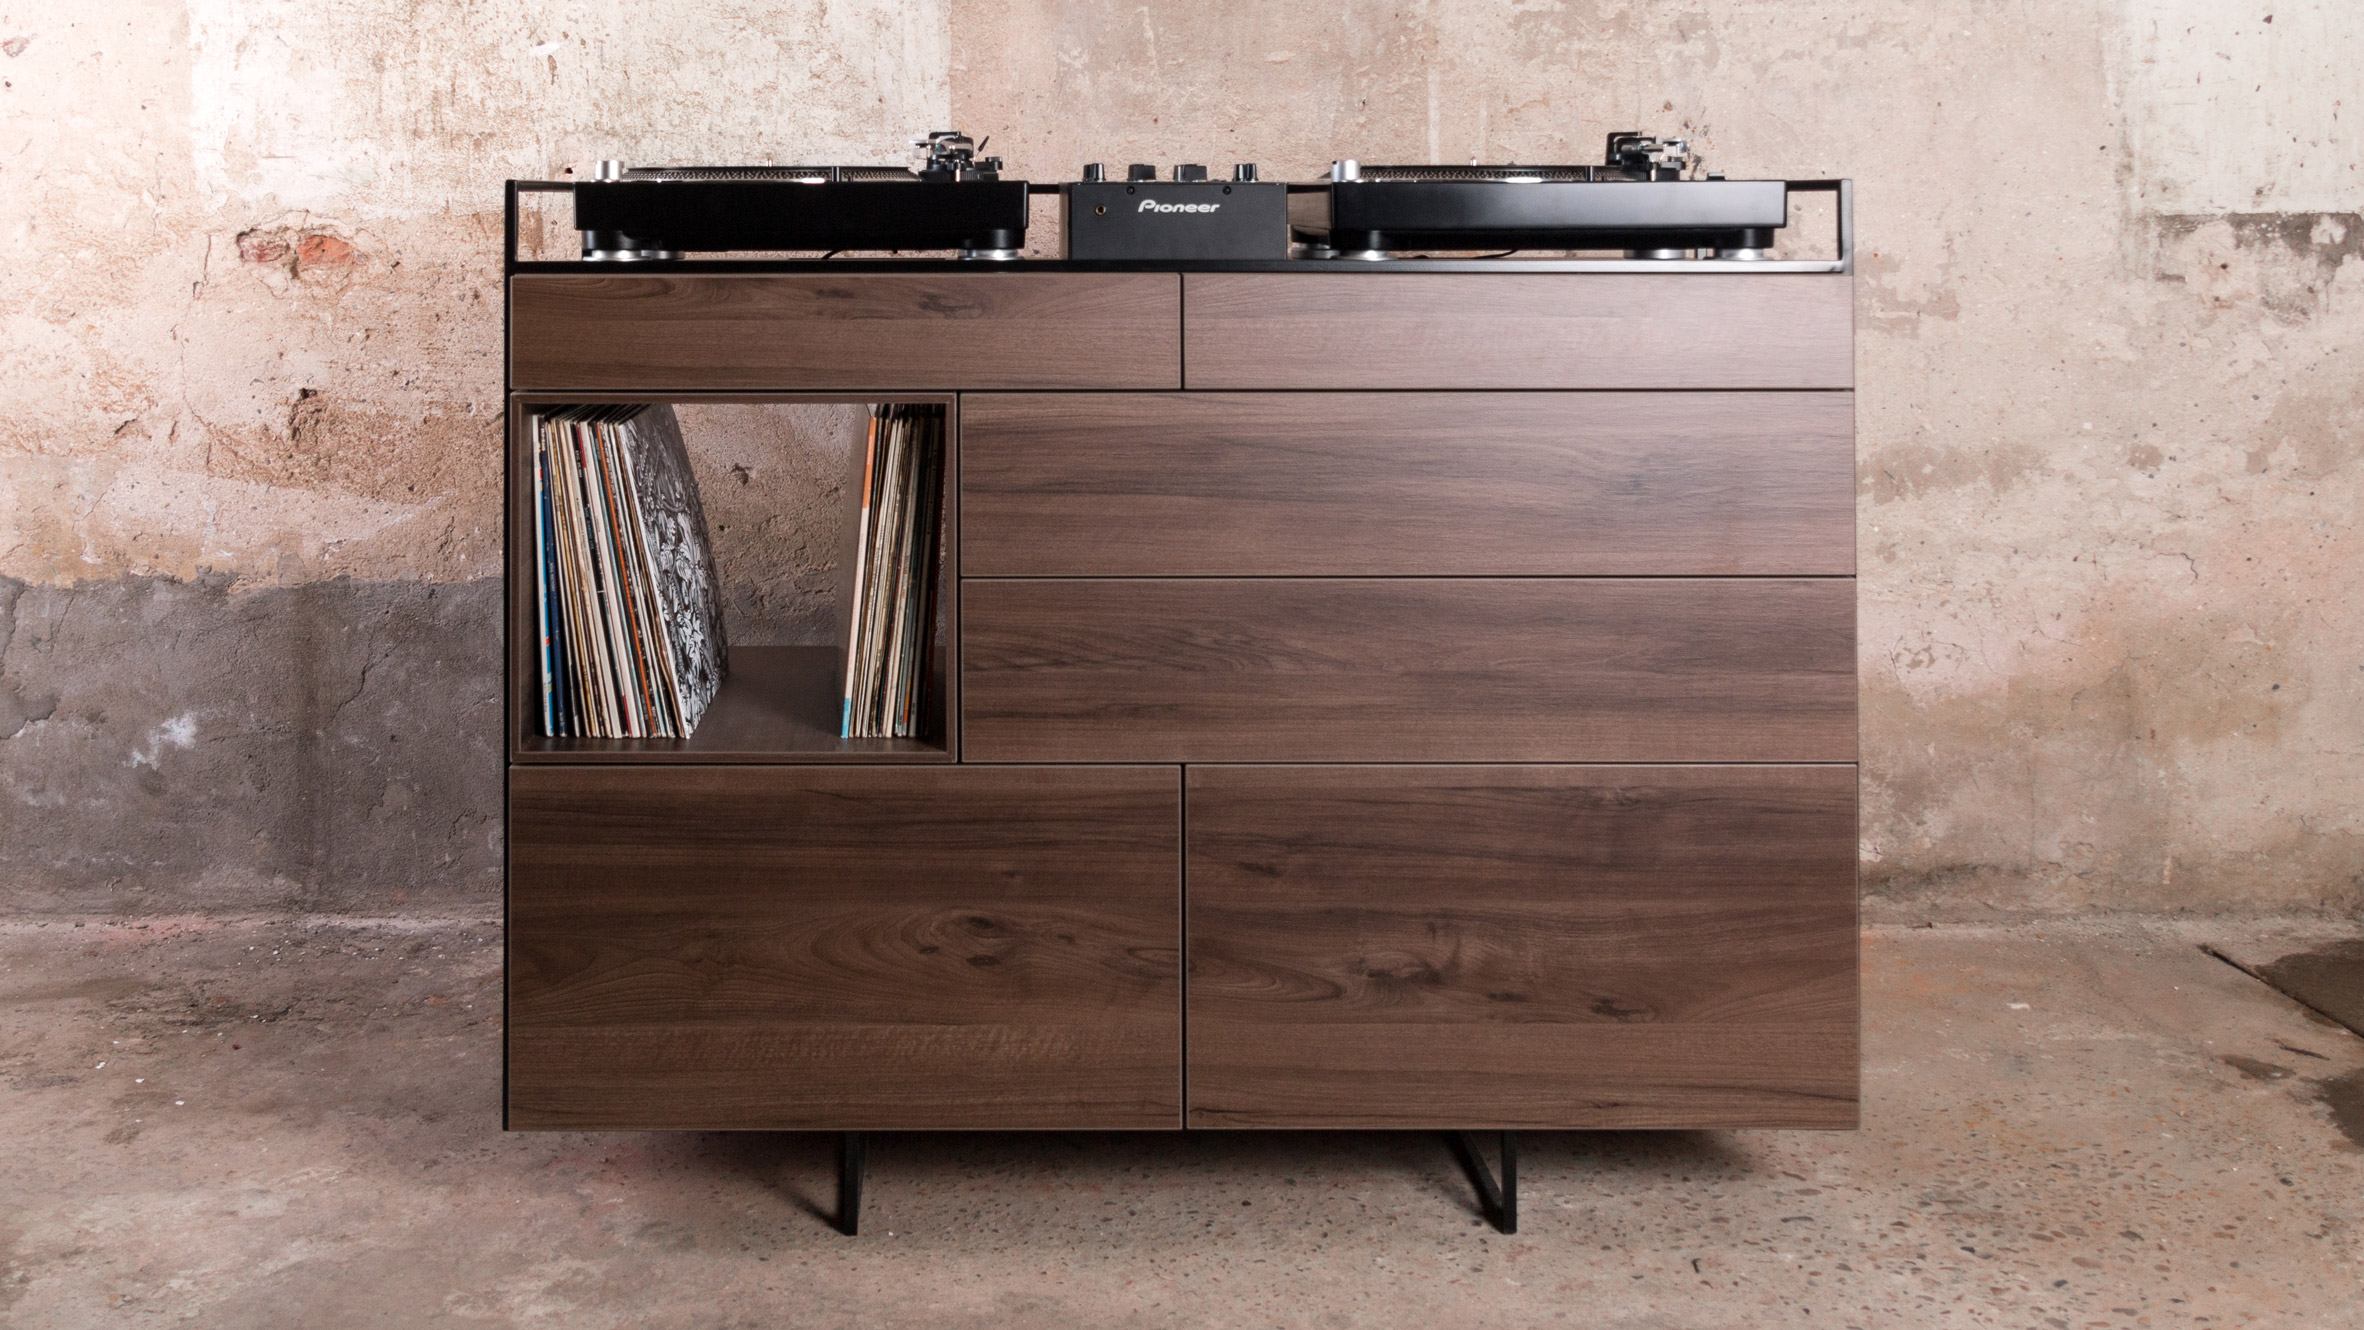 Studio Rik ten Velden's vinyl-storage cabinet doubles as a home DJ booth